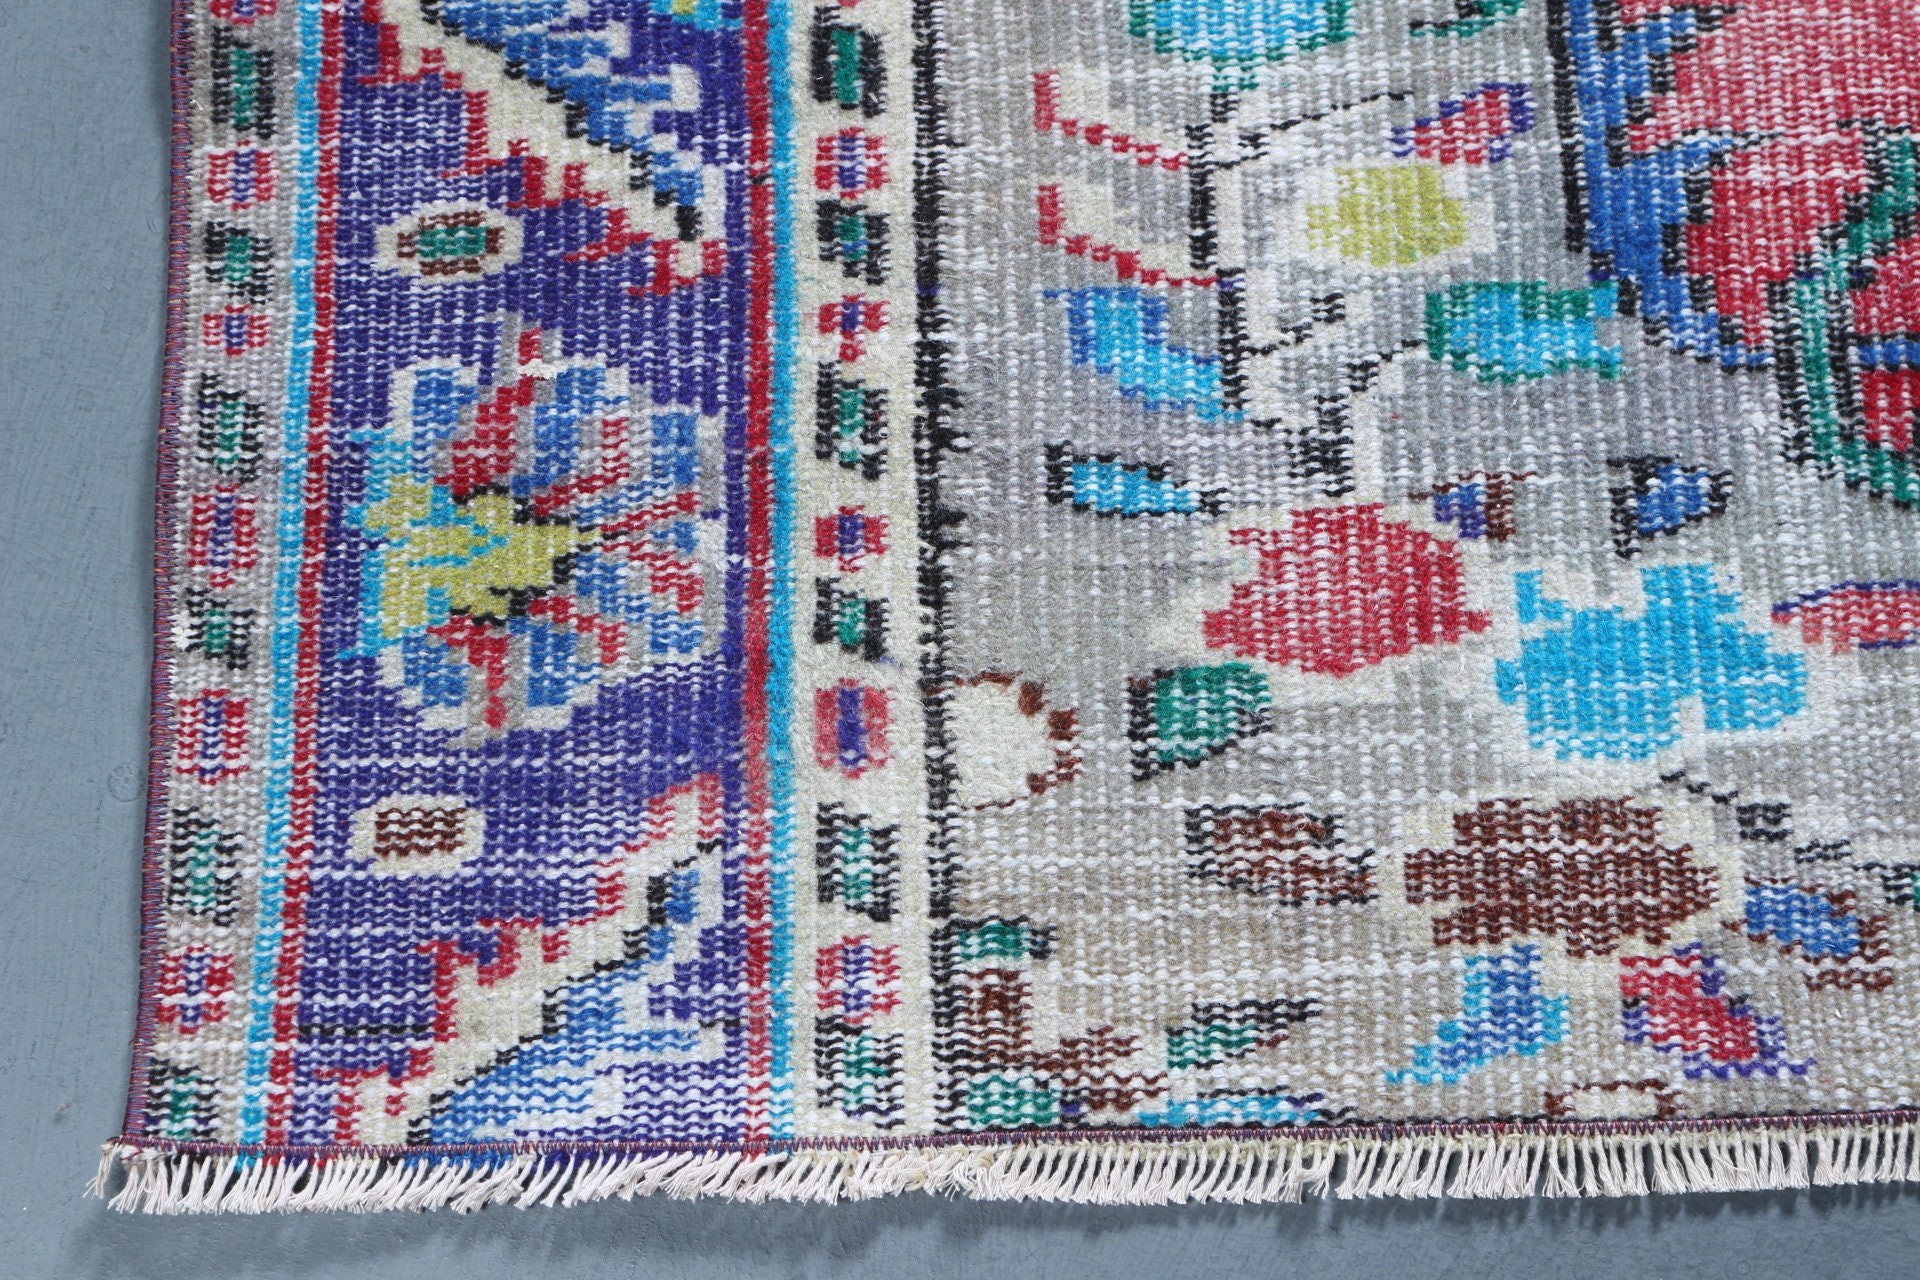 Turkish Rugs, Vintage Rug, Red Wool Rugs, Antique Rugs, Rugs for Kitchen, 2.9x7.9 ft Runner Rug, Stair Rug, Corridor Rug, Moroccan Rugs